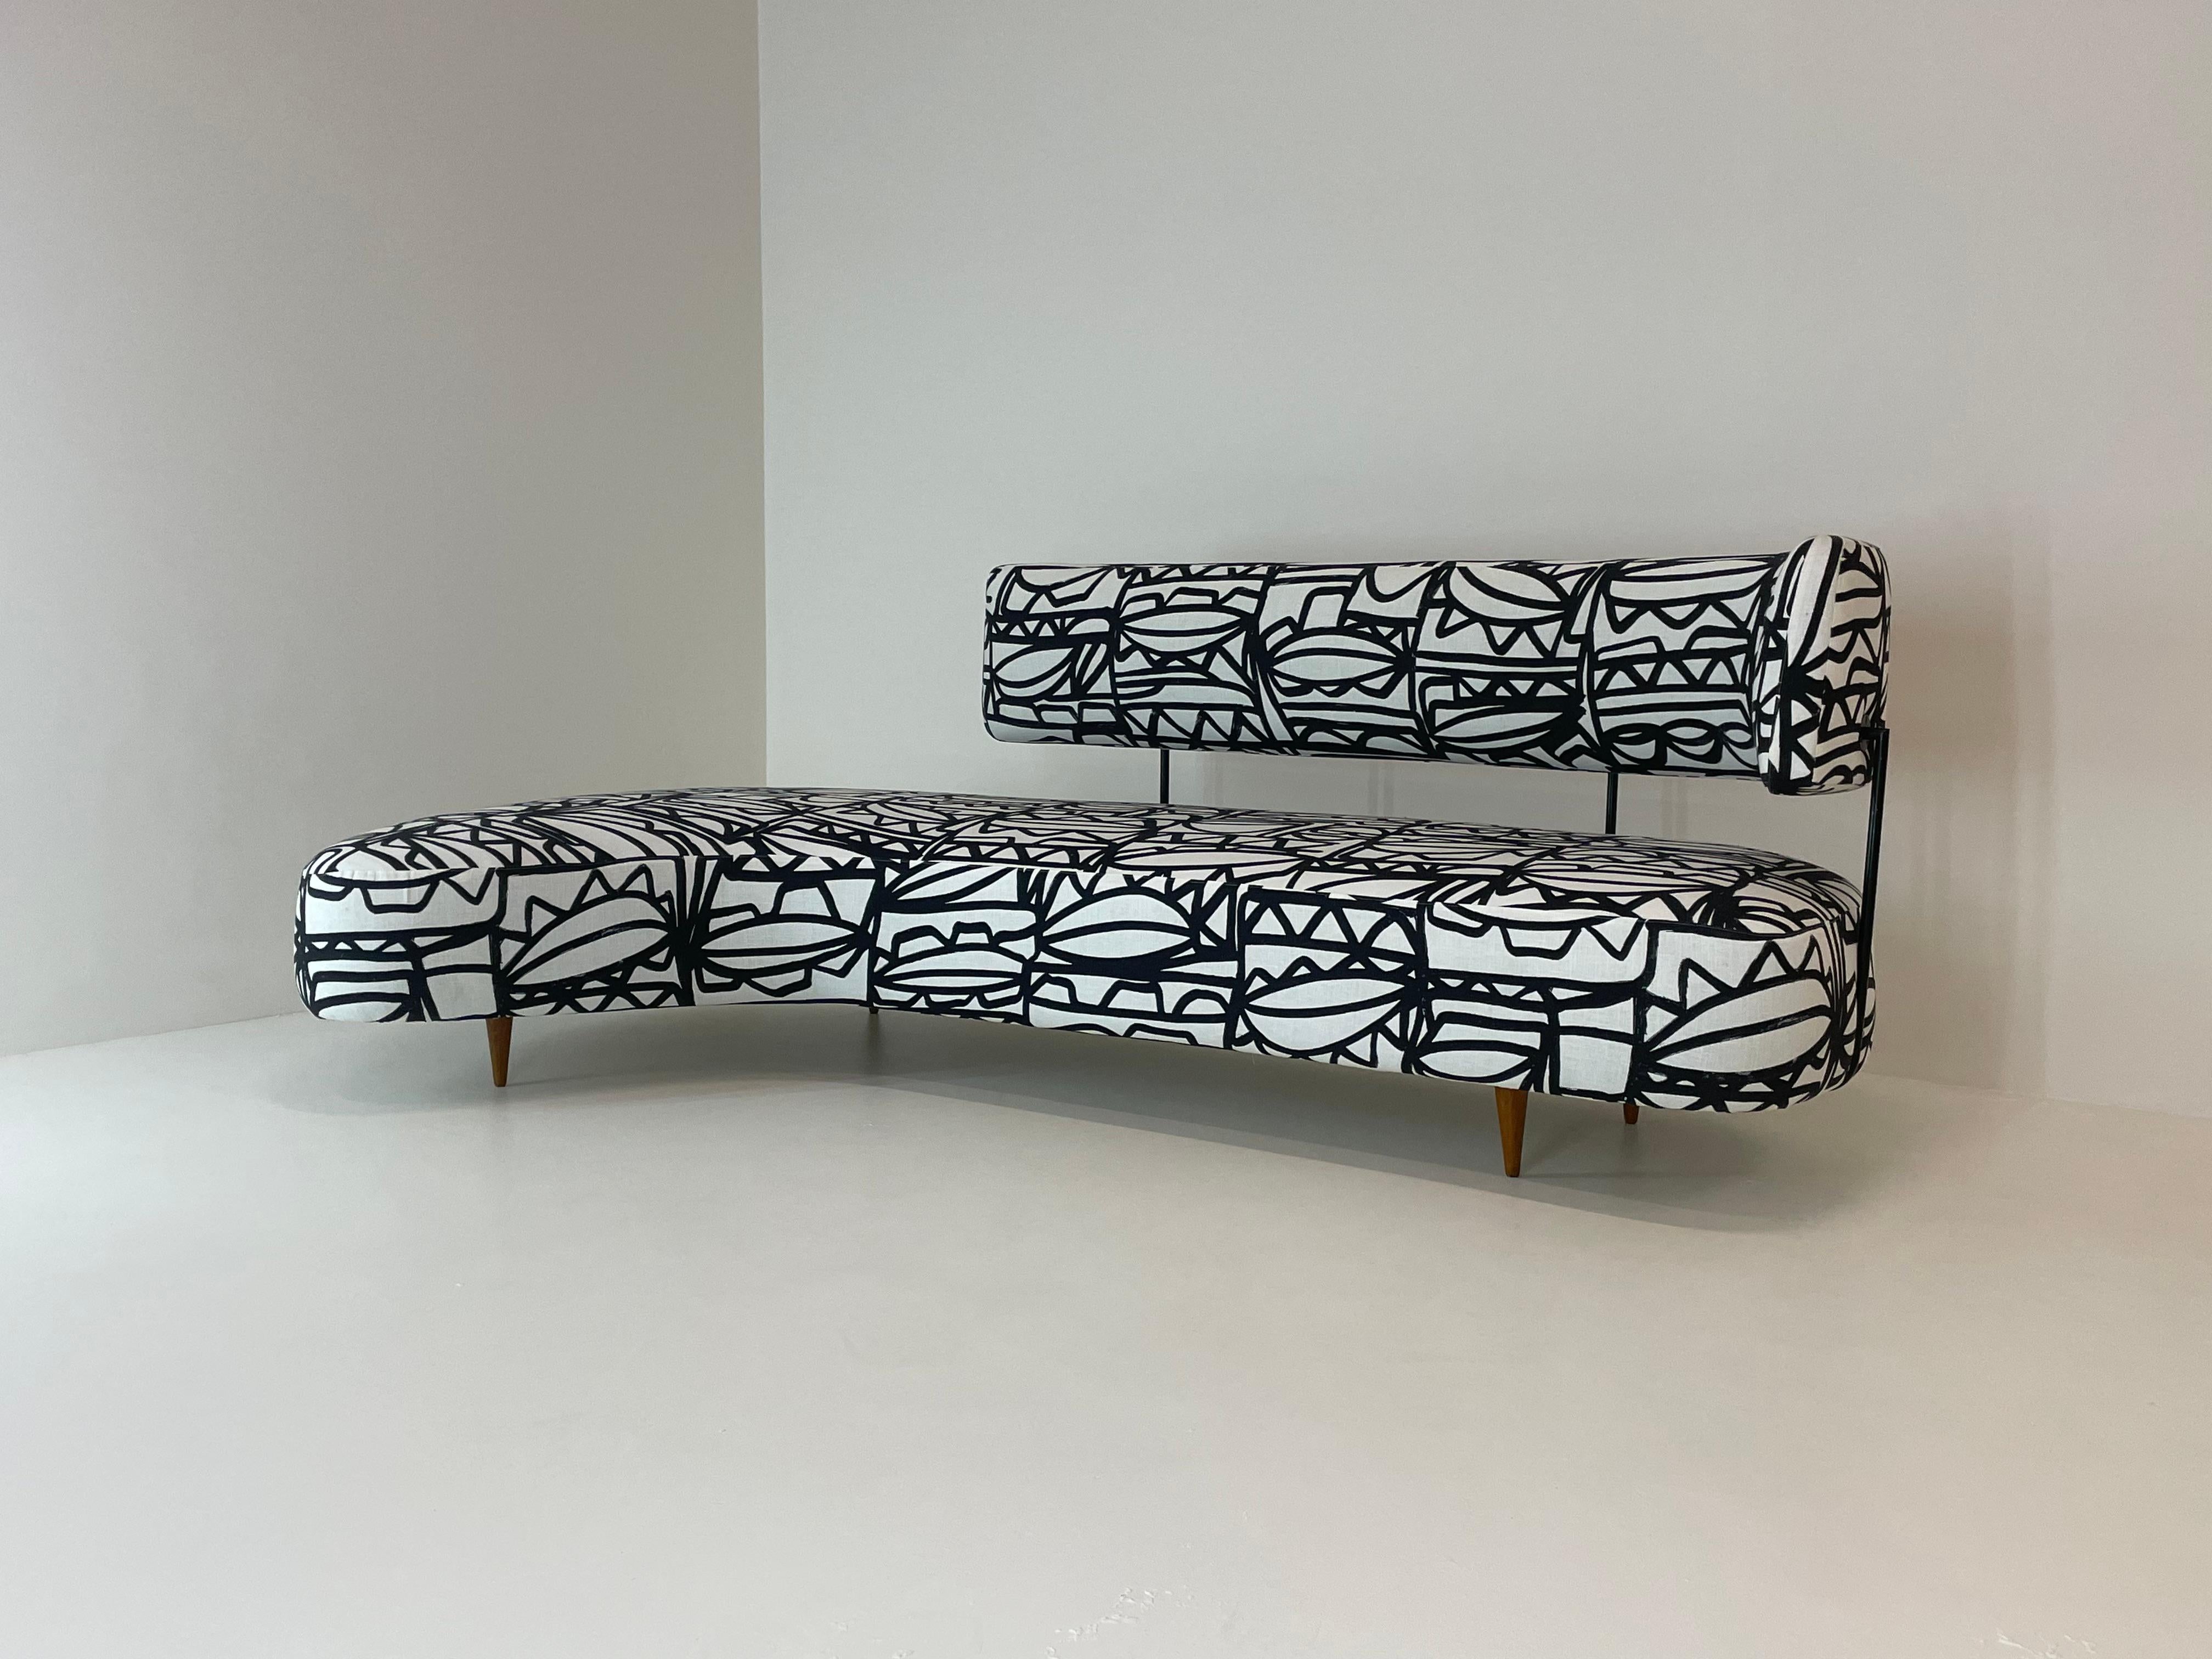 Ecksofa, entworfen von dem Japaner Taichiro Nakay für La Permanente Mobili Cantù in Italien, 1955.
Es handelt sich um ein seltenes Sofa mit einzigartigen und geschwungenen Linien, das von vier Kirschholzfüßen mit hervorragender Patina in Form eines